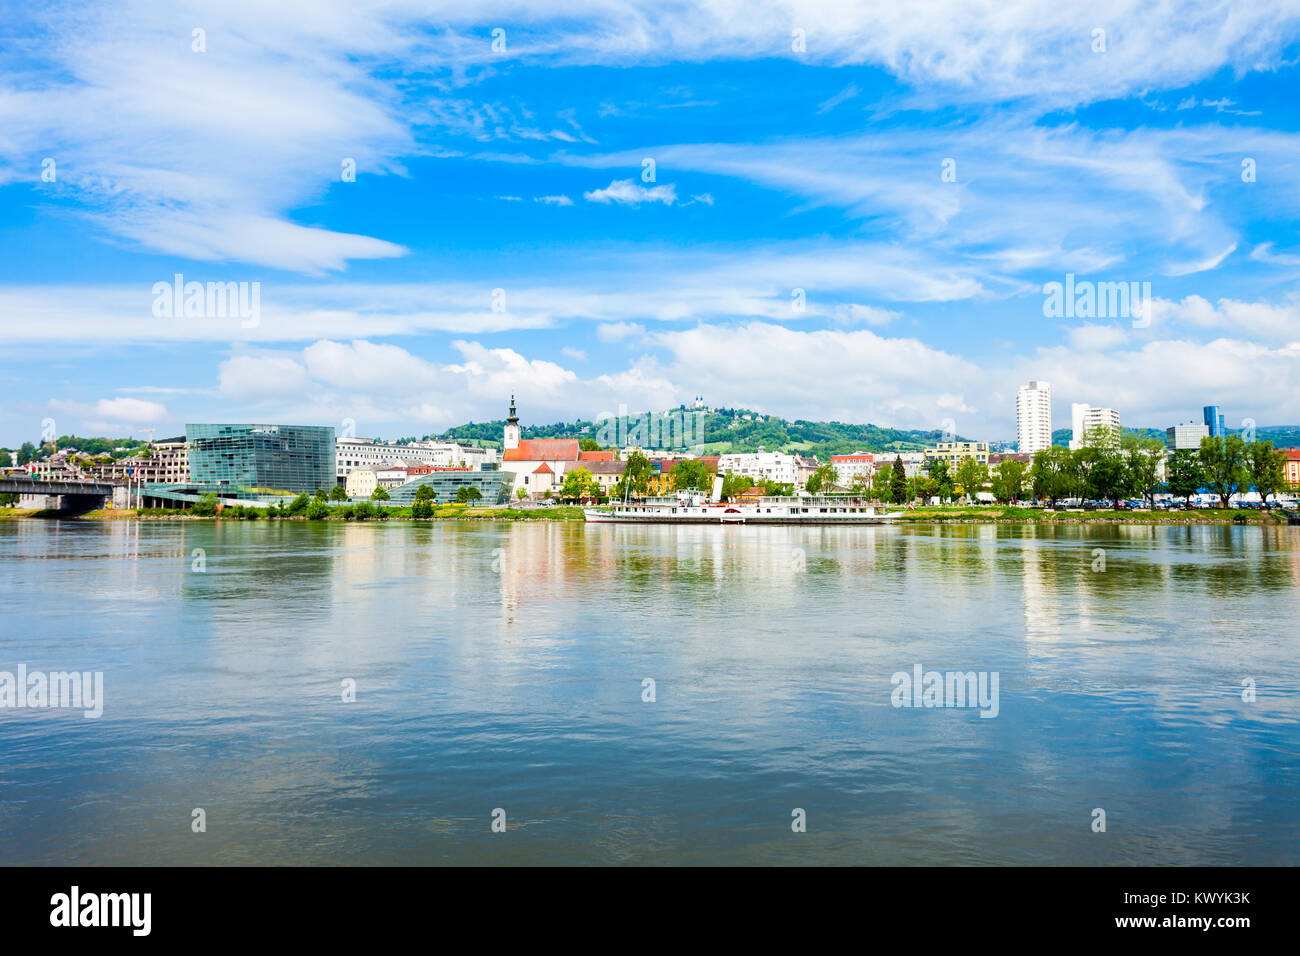 Le centre-ville de Linz et Danube en Autriche. Linz est la troisième plus grande ville d'Autriche. Banque D'Images